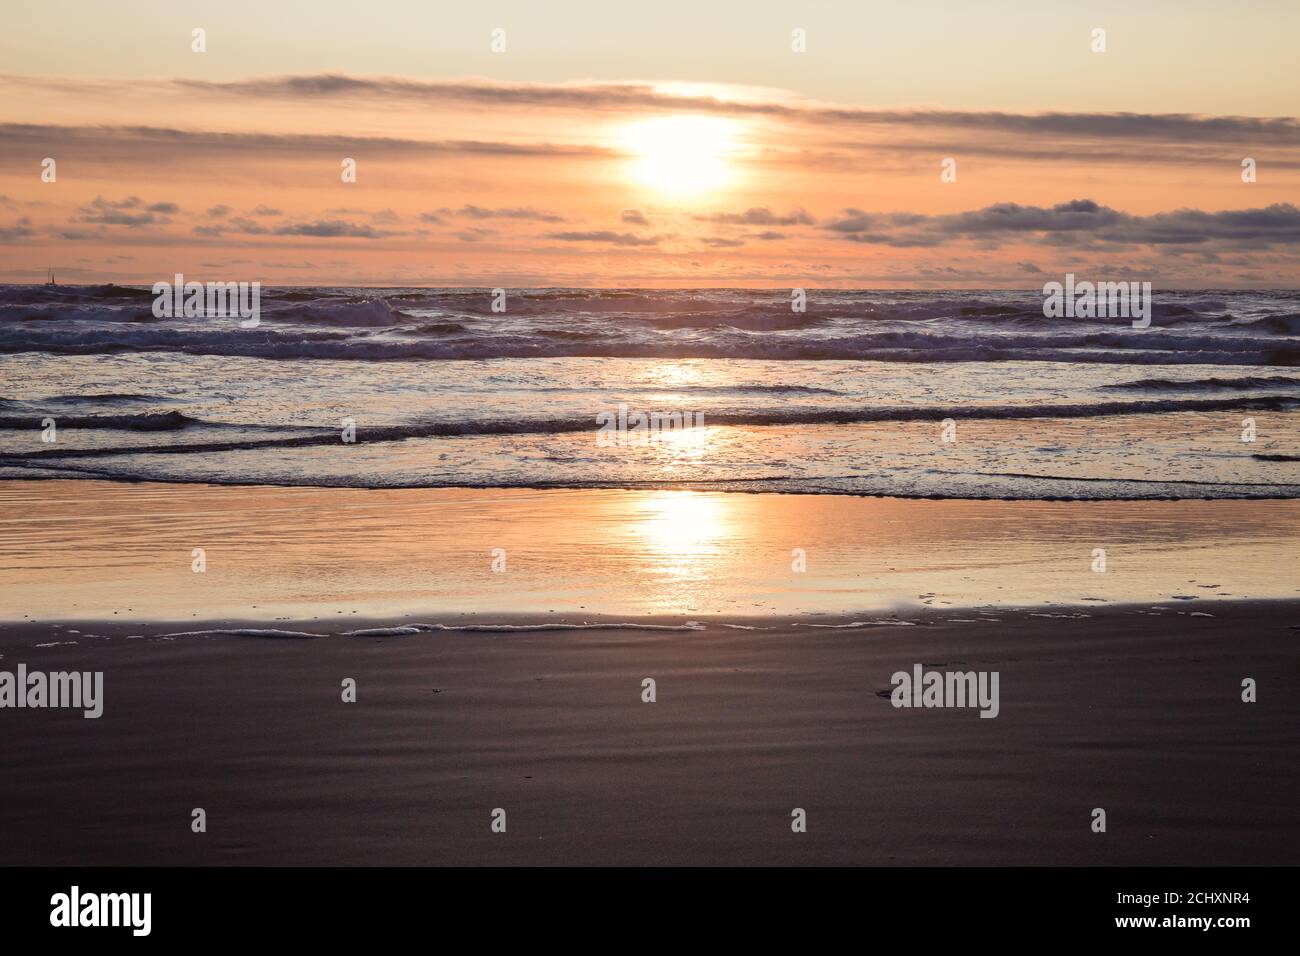 Reflection of Orange Sunset on Ocean Beach Stock Photo